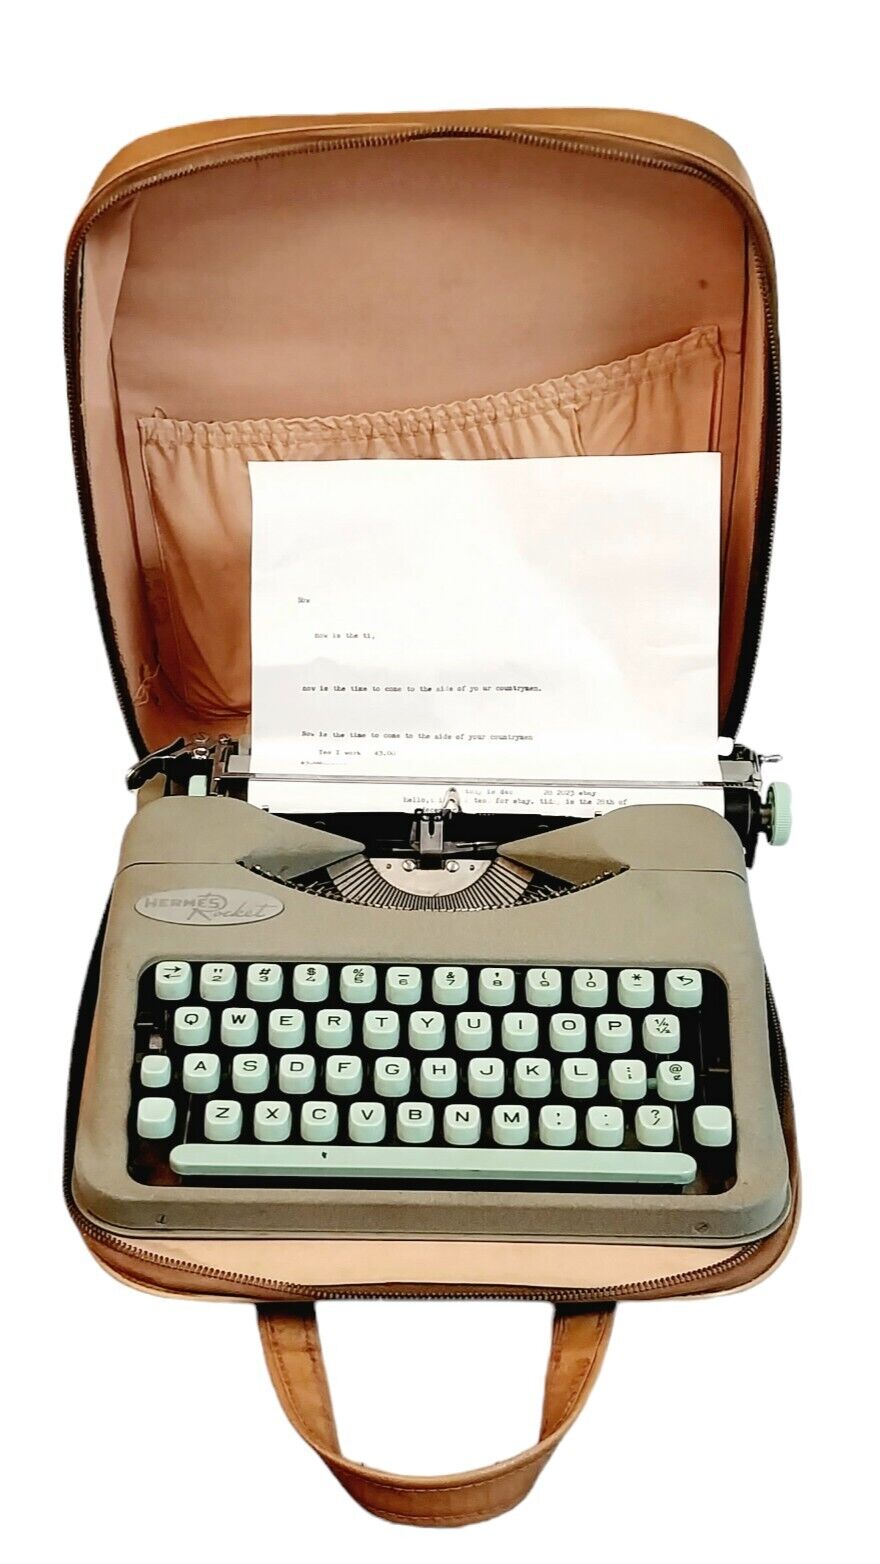 Hermes Rocket Paillard Portable Typewriter Seafoam Mint Green Vintage 1964